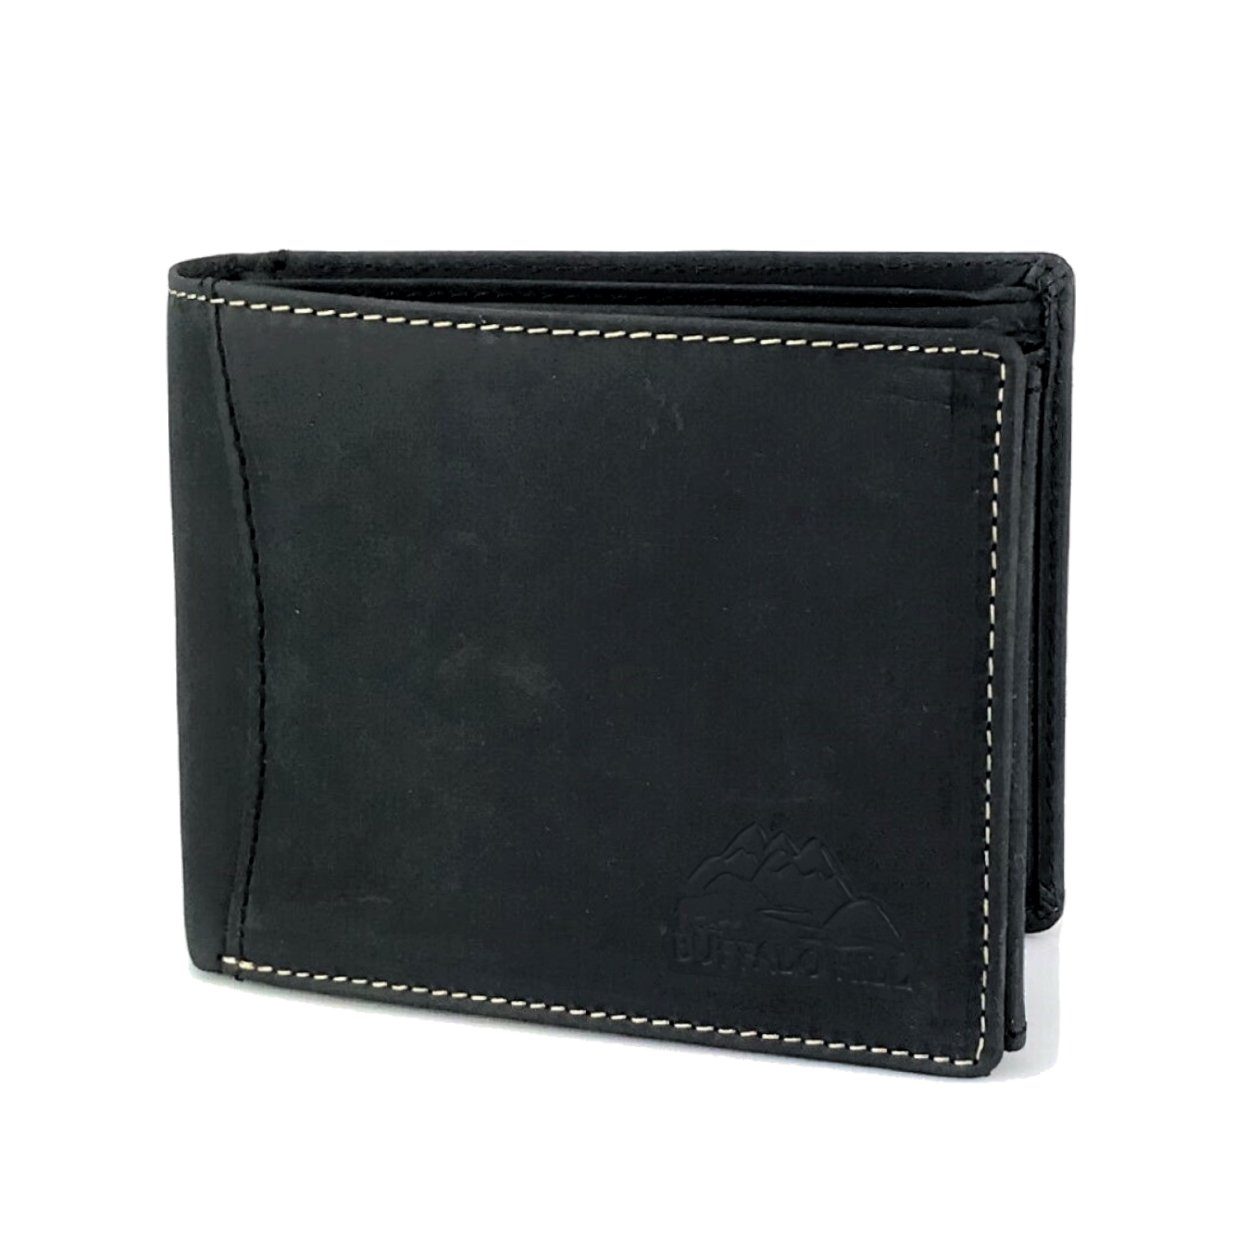 L&B Geldbörse Büffelleder Portemonnaie, integrierter RFID-Schutz, elegantes Wallet im Querformat mit 8 Kartenfächern in Grau Graphit